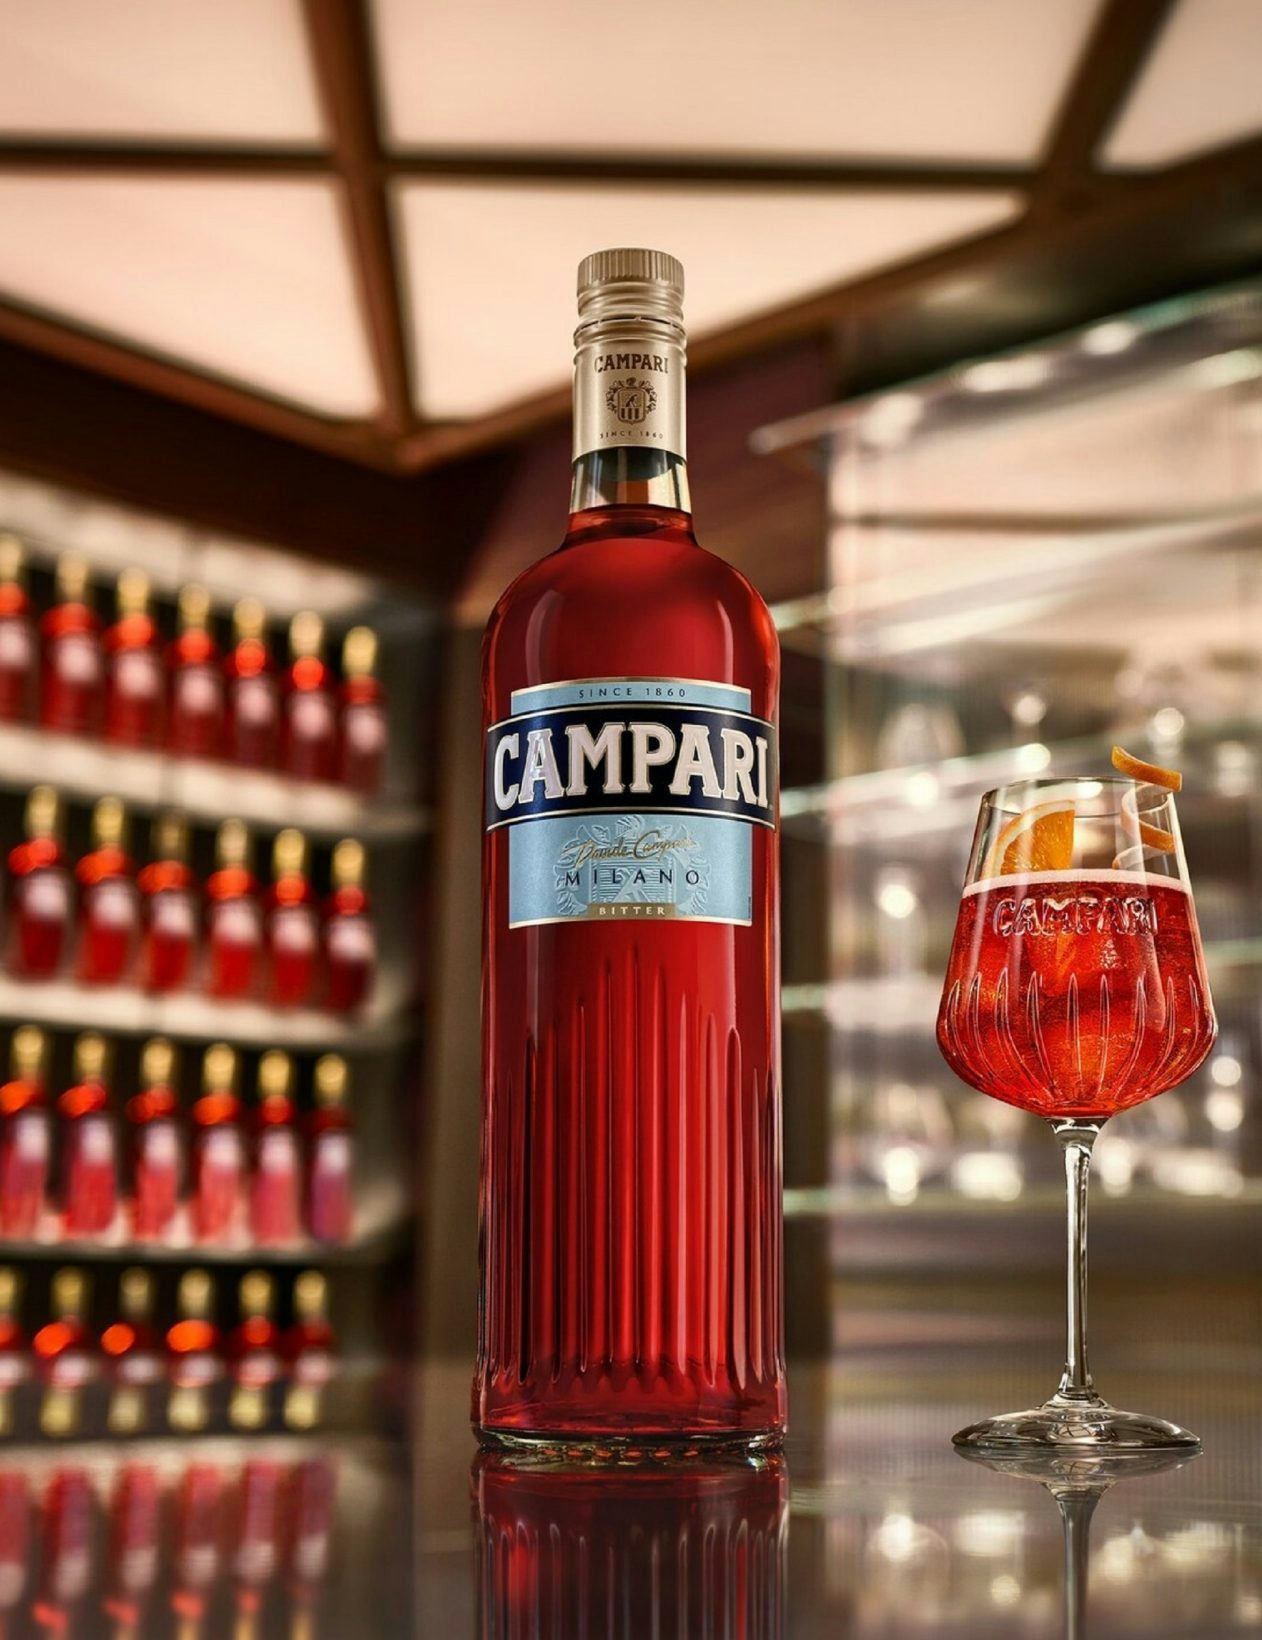 Italian Campari acquires Beam Holding France, owner of Courvoisier